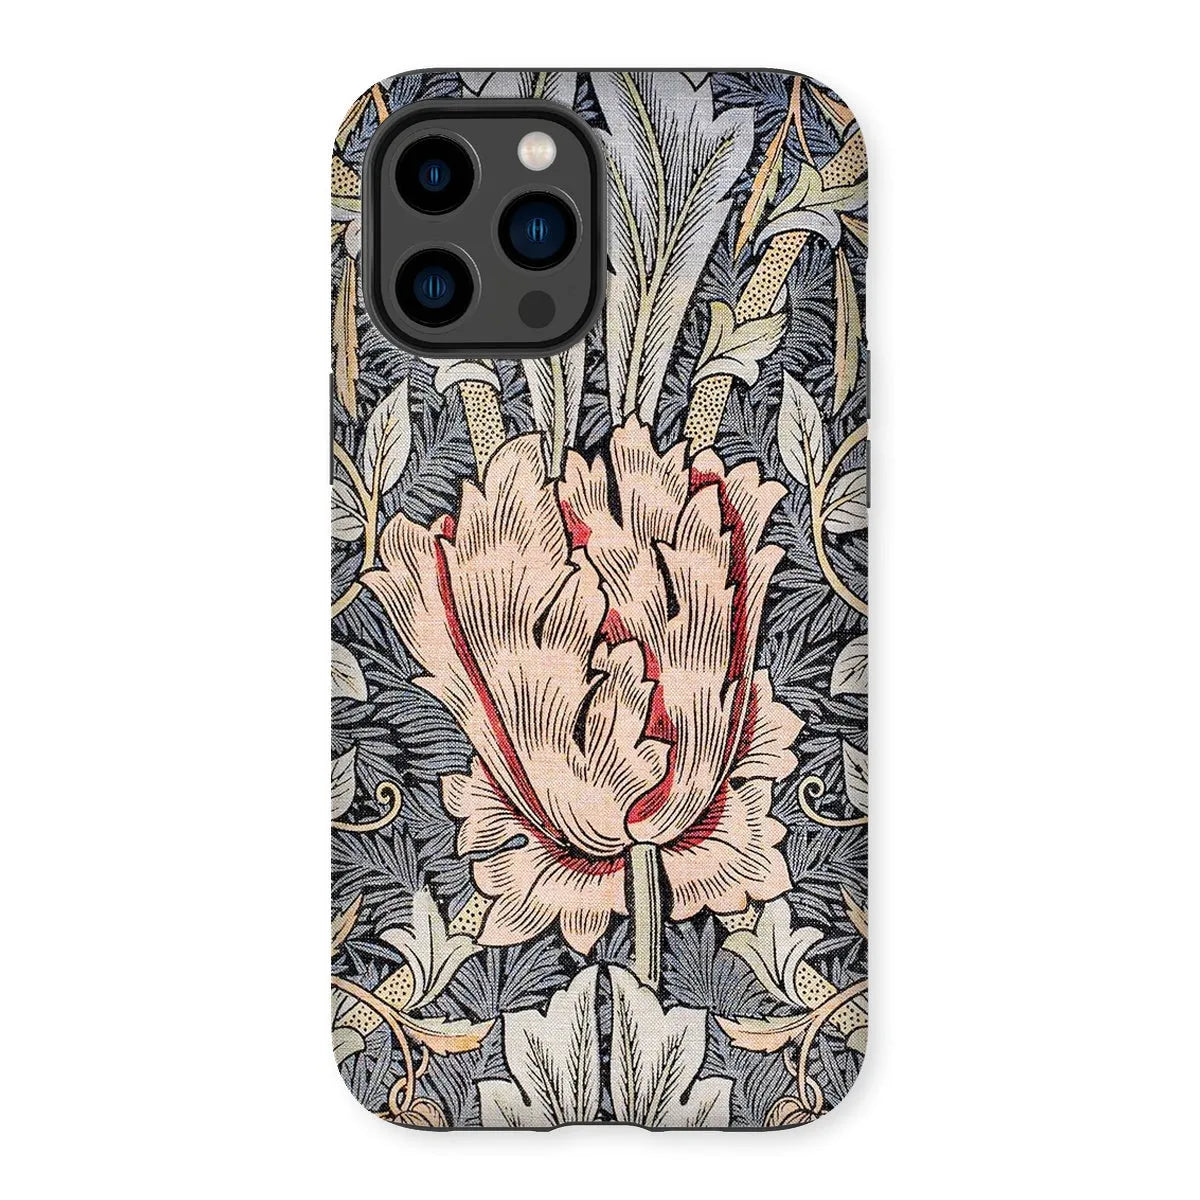 Honeysuckle Arts And Crafts Movement Phone Case - William Morris - Iphone 12 Mini / Matte - Mobile Phone Cases